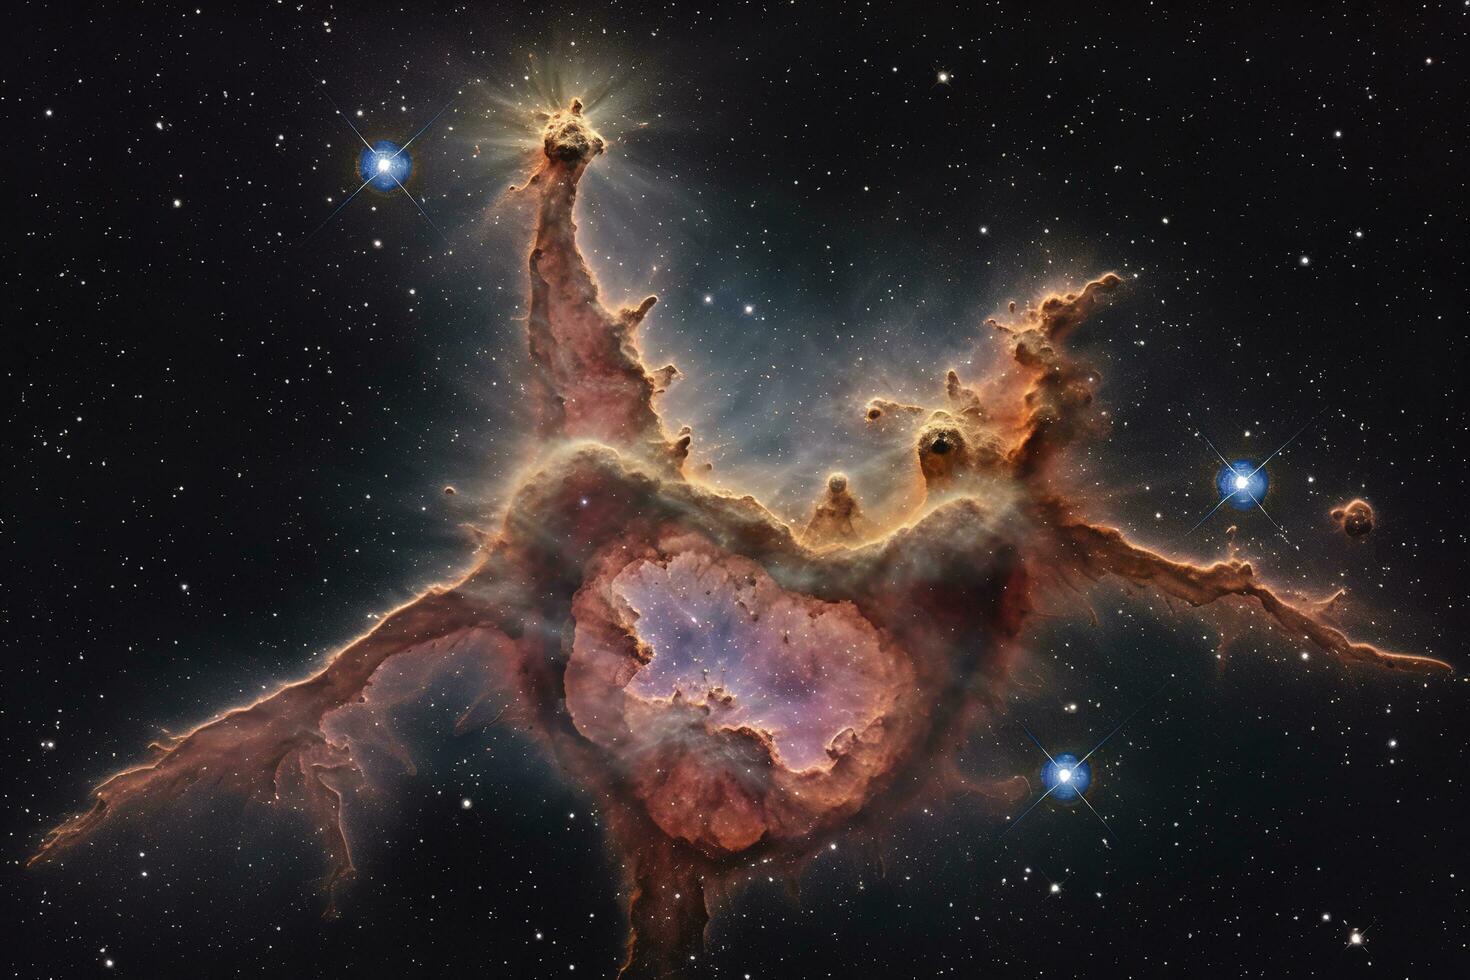 använder sig av flera olika exponeringar till skapa en detaljerad och färgrik bild av de carina nebulosa, en stjärnbildande område belägen i de sydlig konstellation Carina, generera ai foto